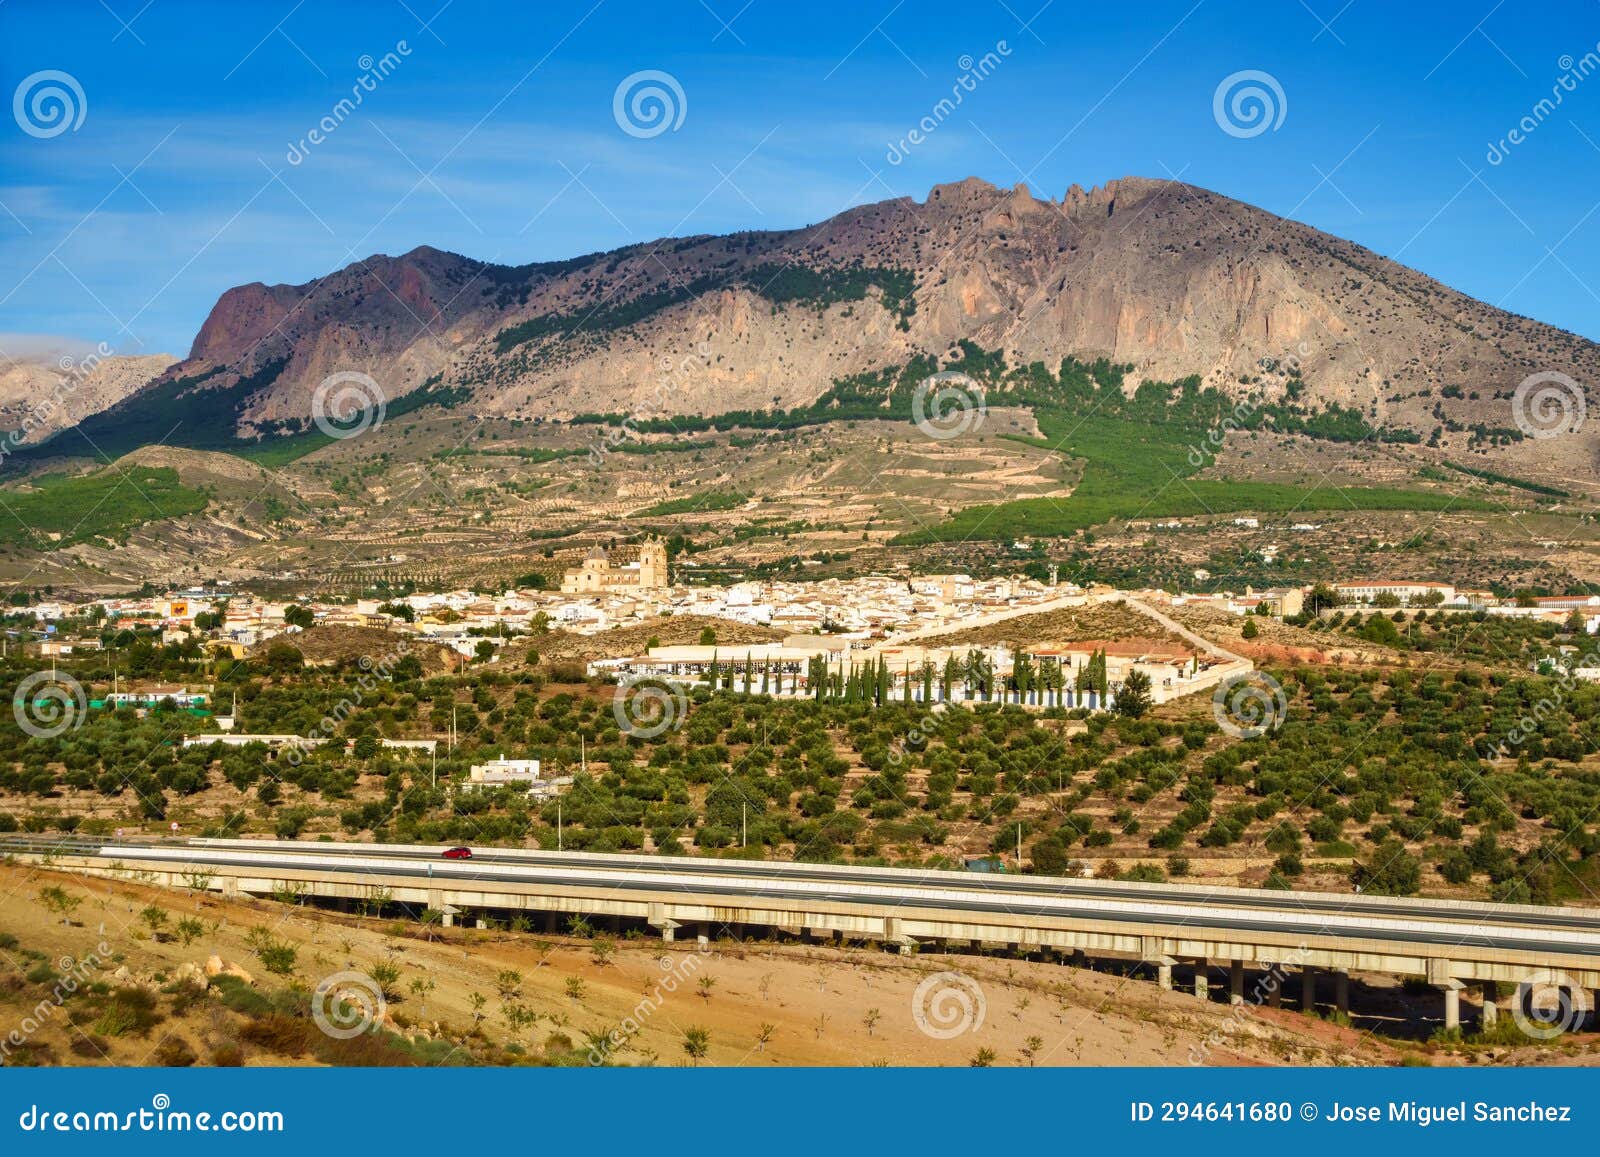 panoramic view of the andalusian white village next to the high mountains that surround it, velez rubio, almeria.